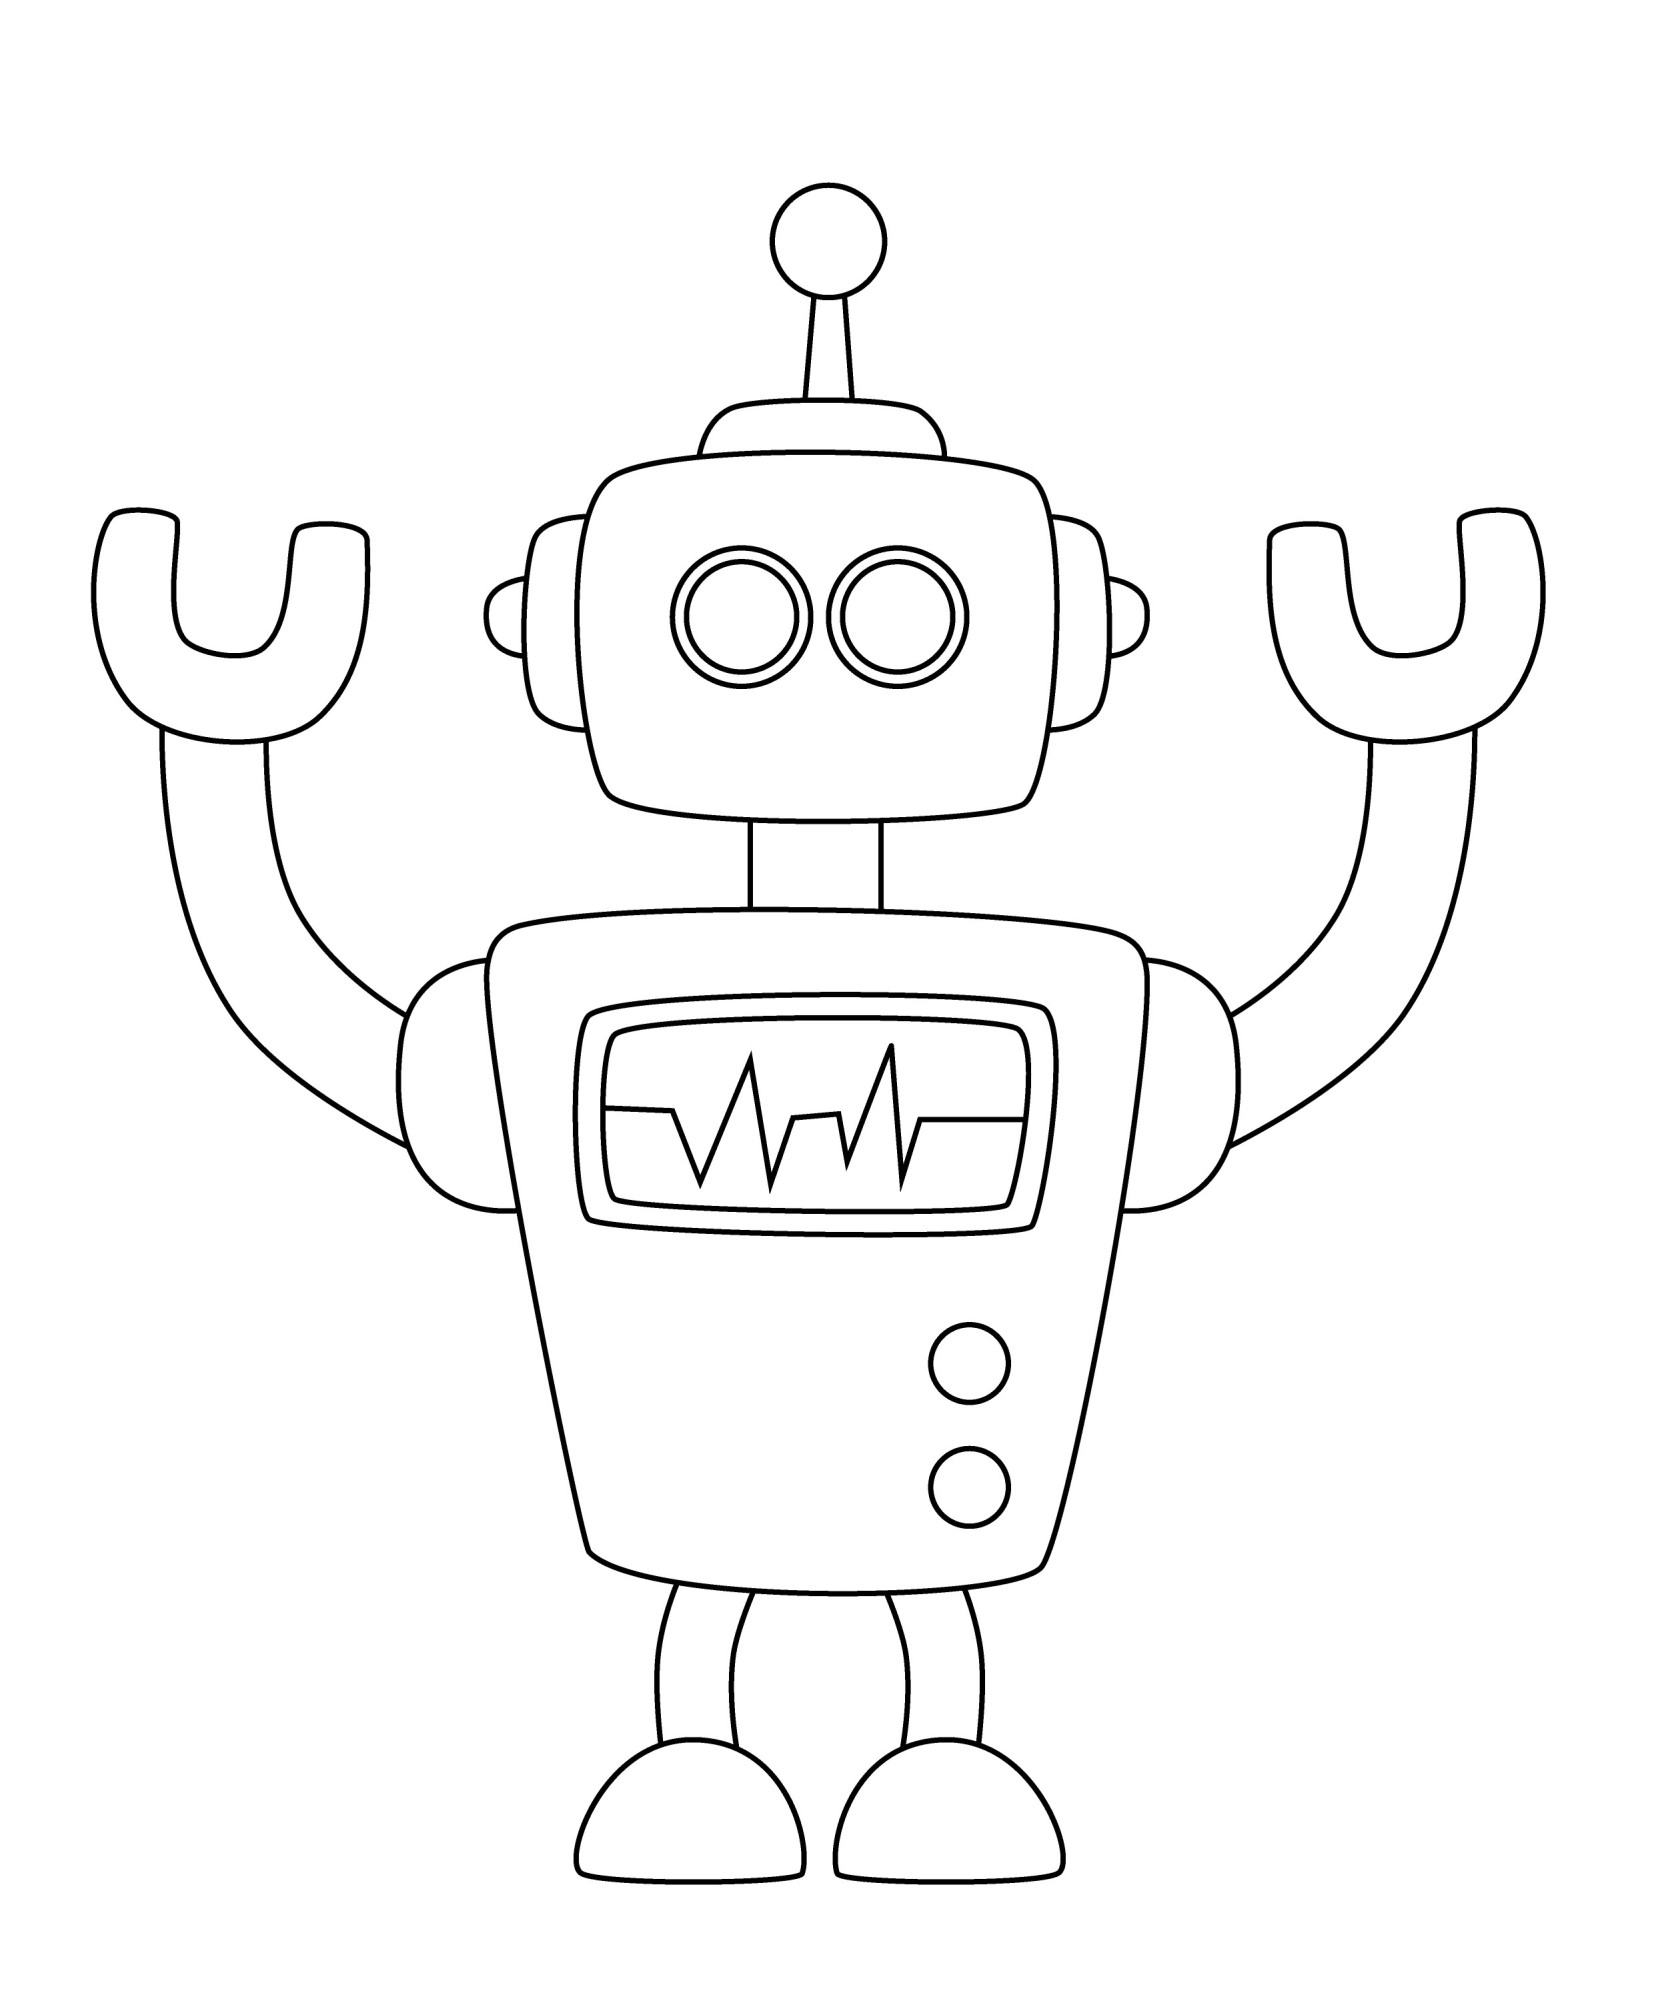 Раскраска для детей: ретро робот с антенной